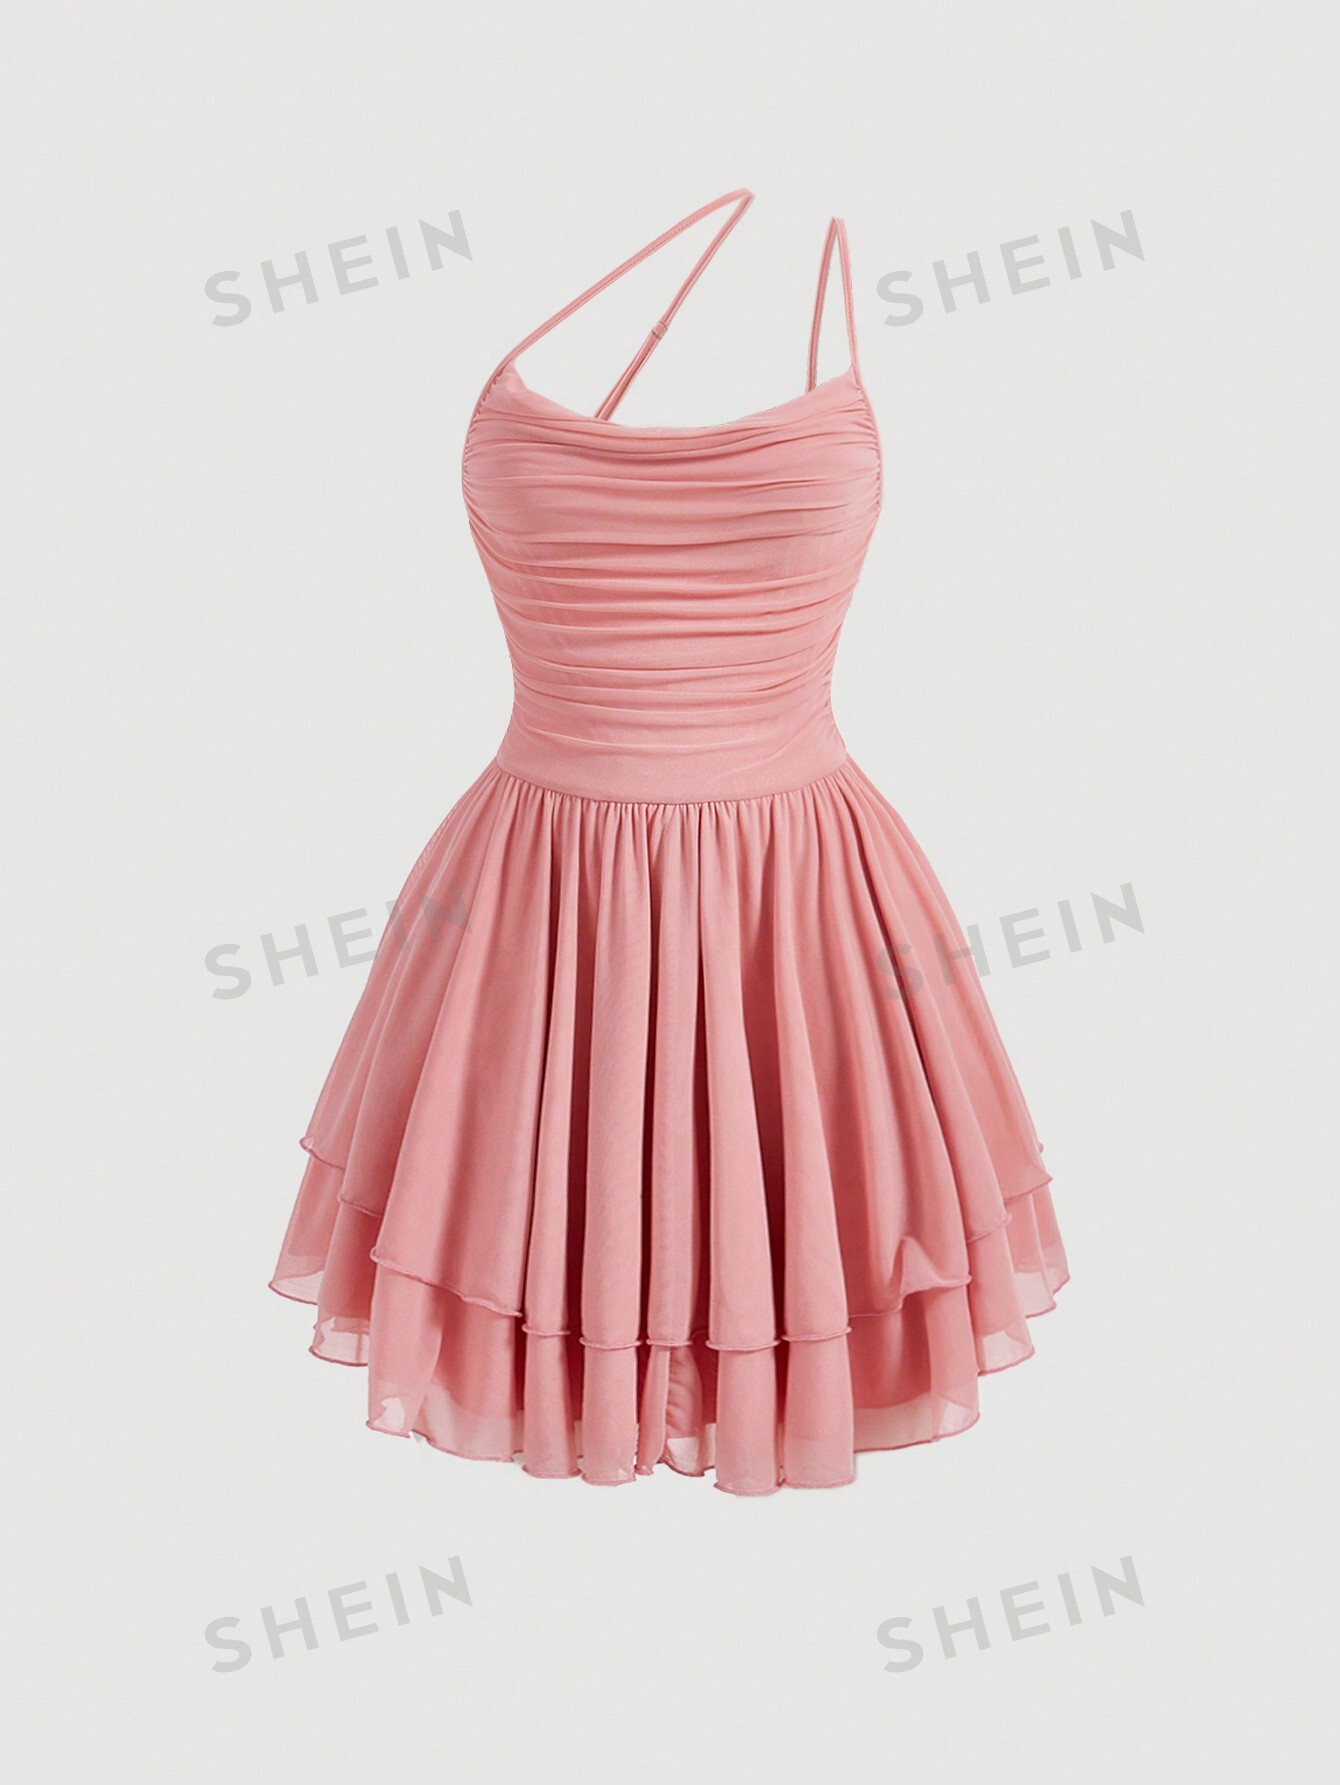 SHEIN MOD Женское плиссированное платье без рукавов с рюшами и подолом, розовый shein mod белая кружевная декорированная асимметричная юбка с рюшами по подолу белый